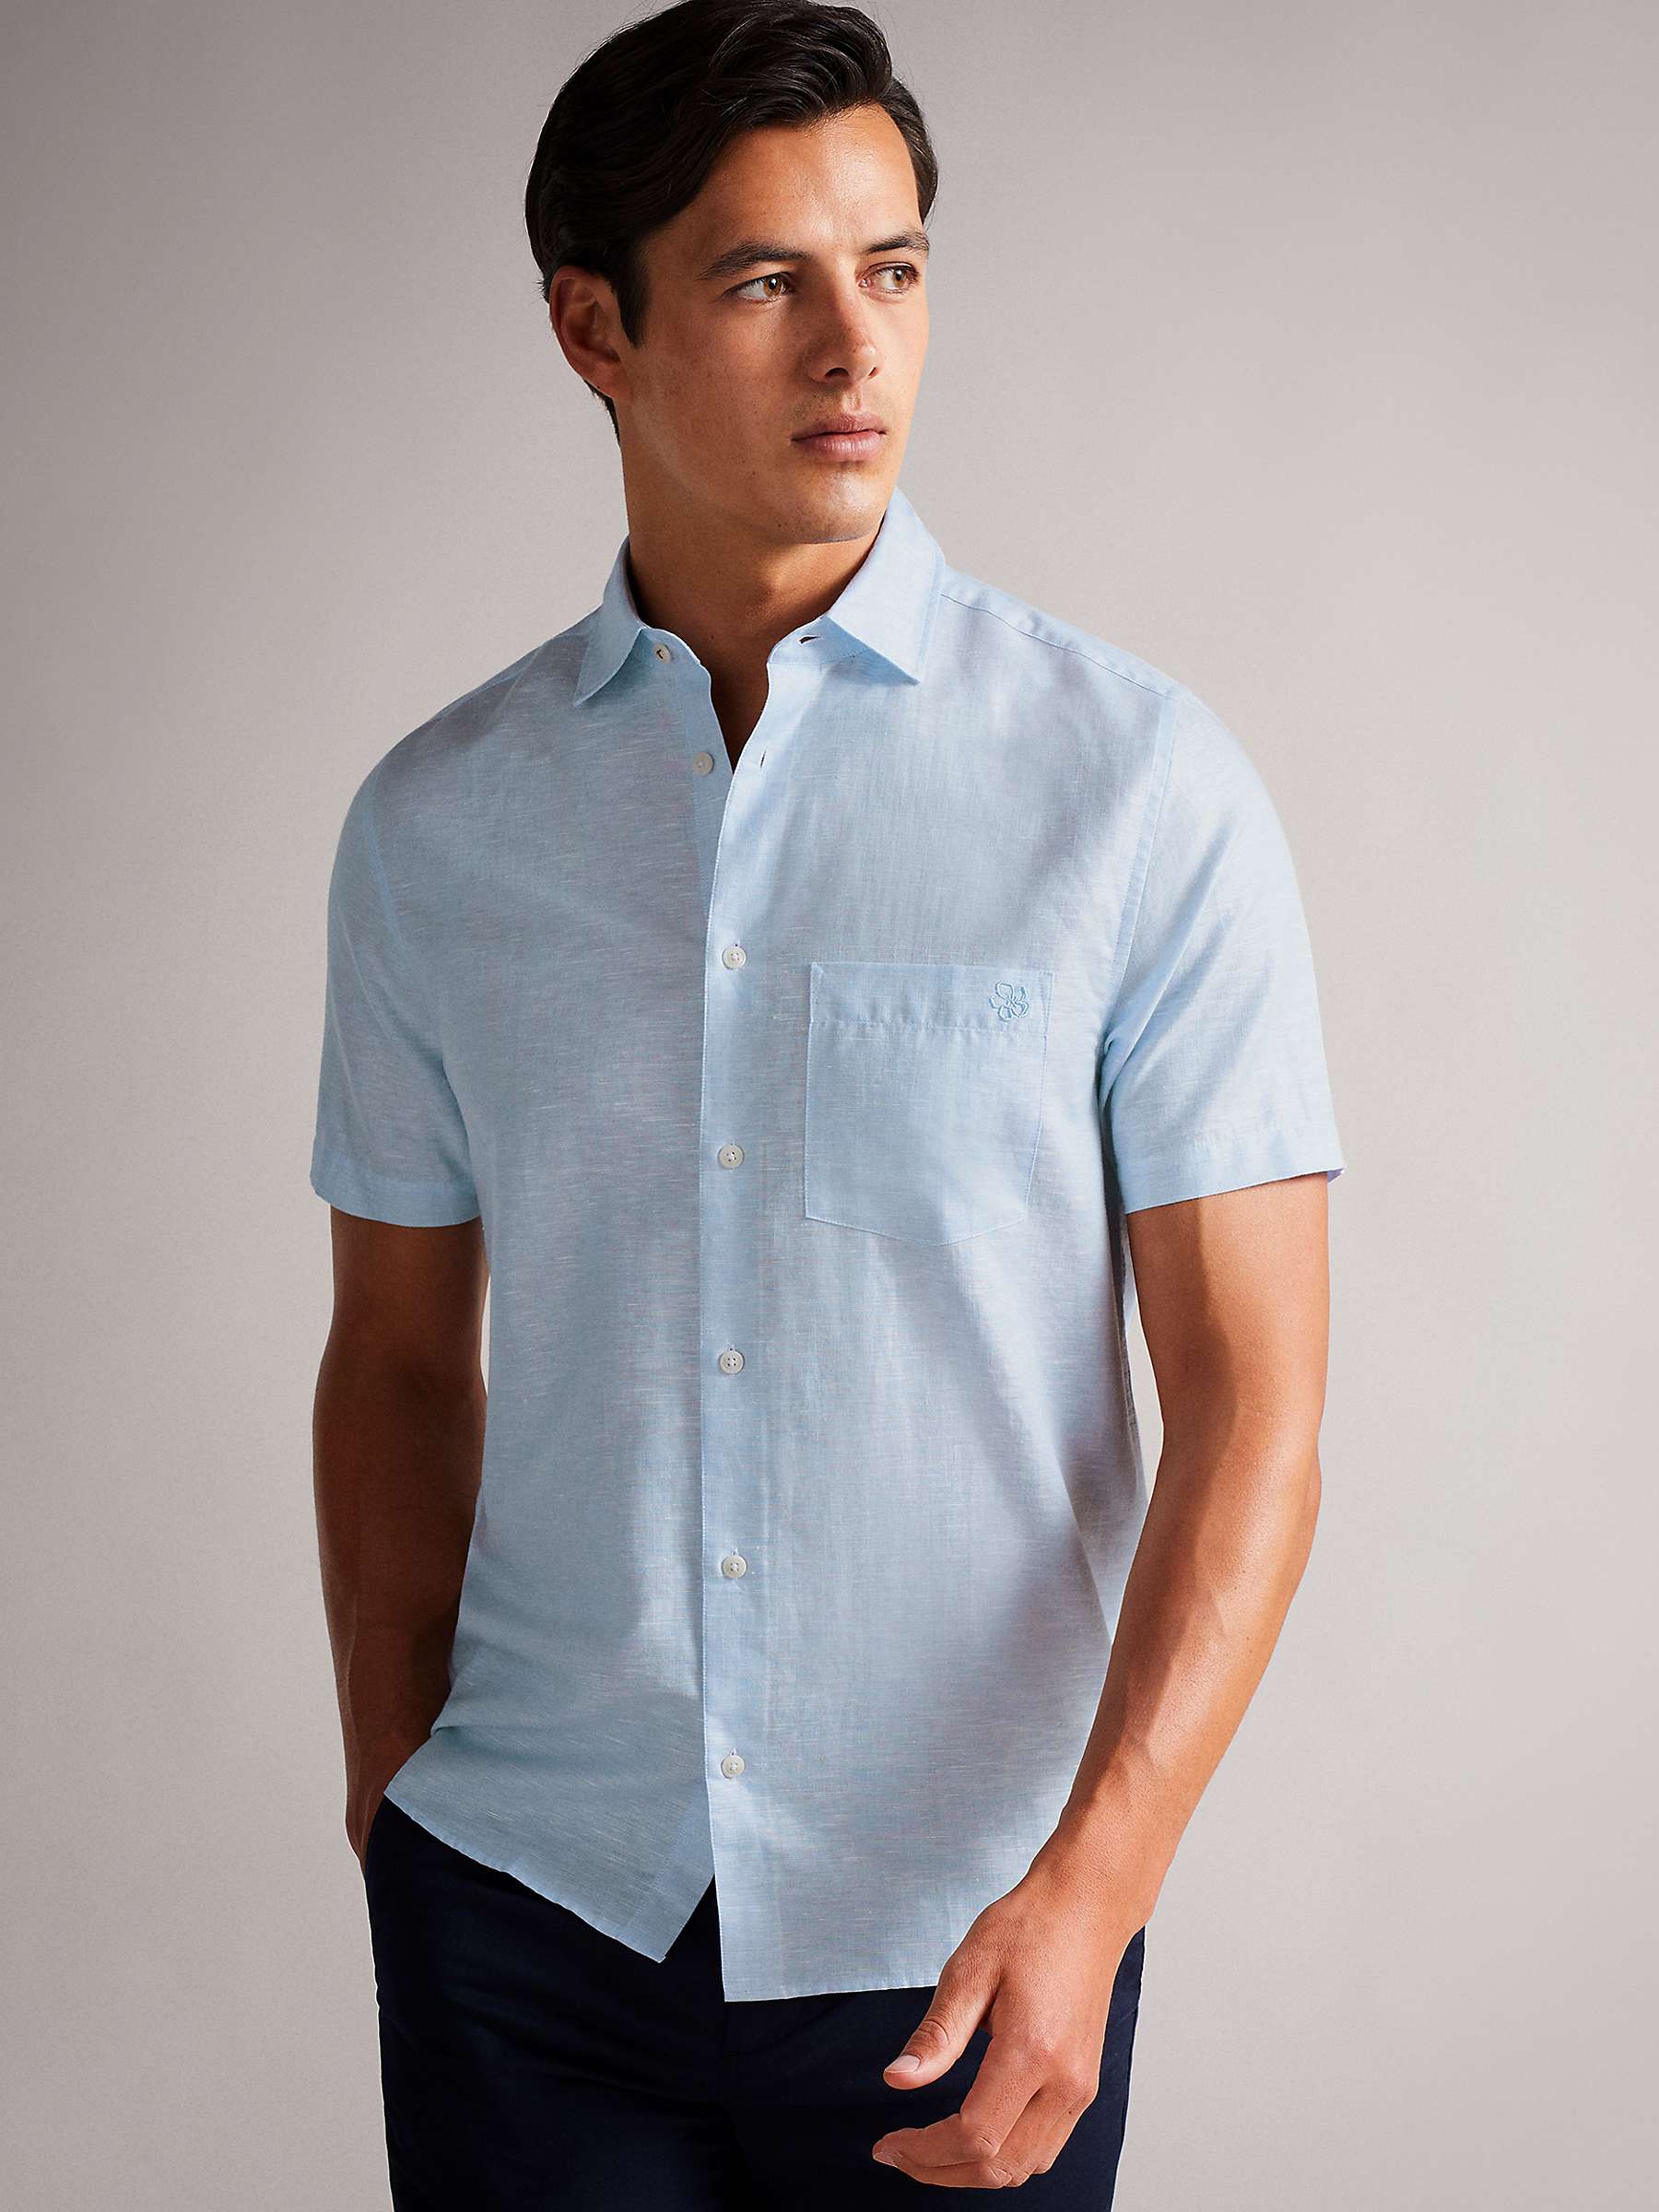 Buy Ted Baker Addle Short Sleeve Linen Blend Shirt Online at johnlewis.com